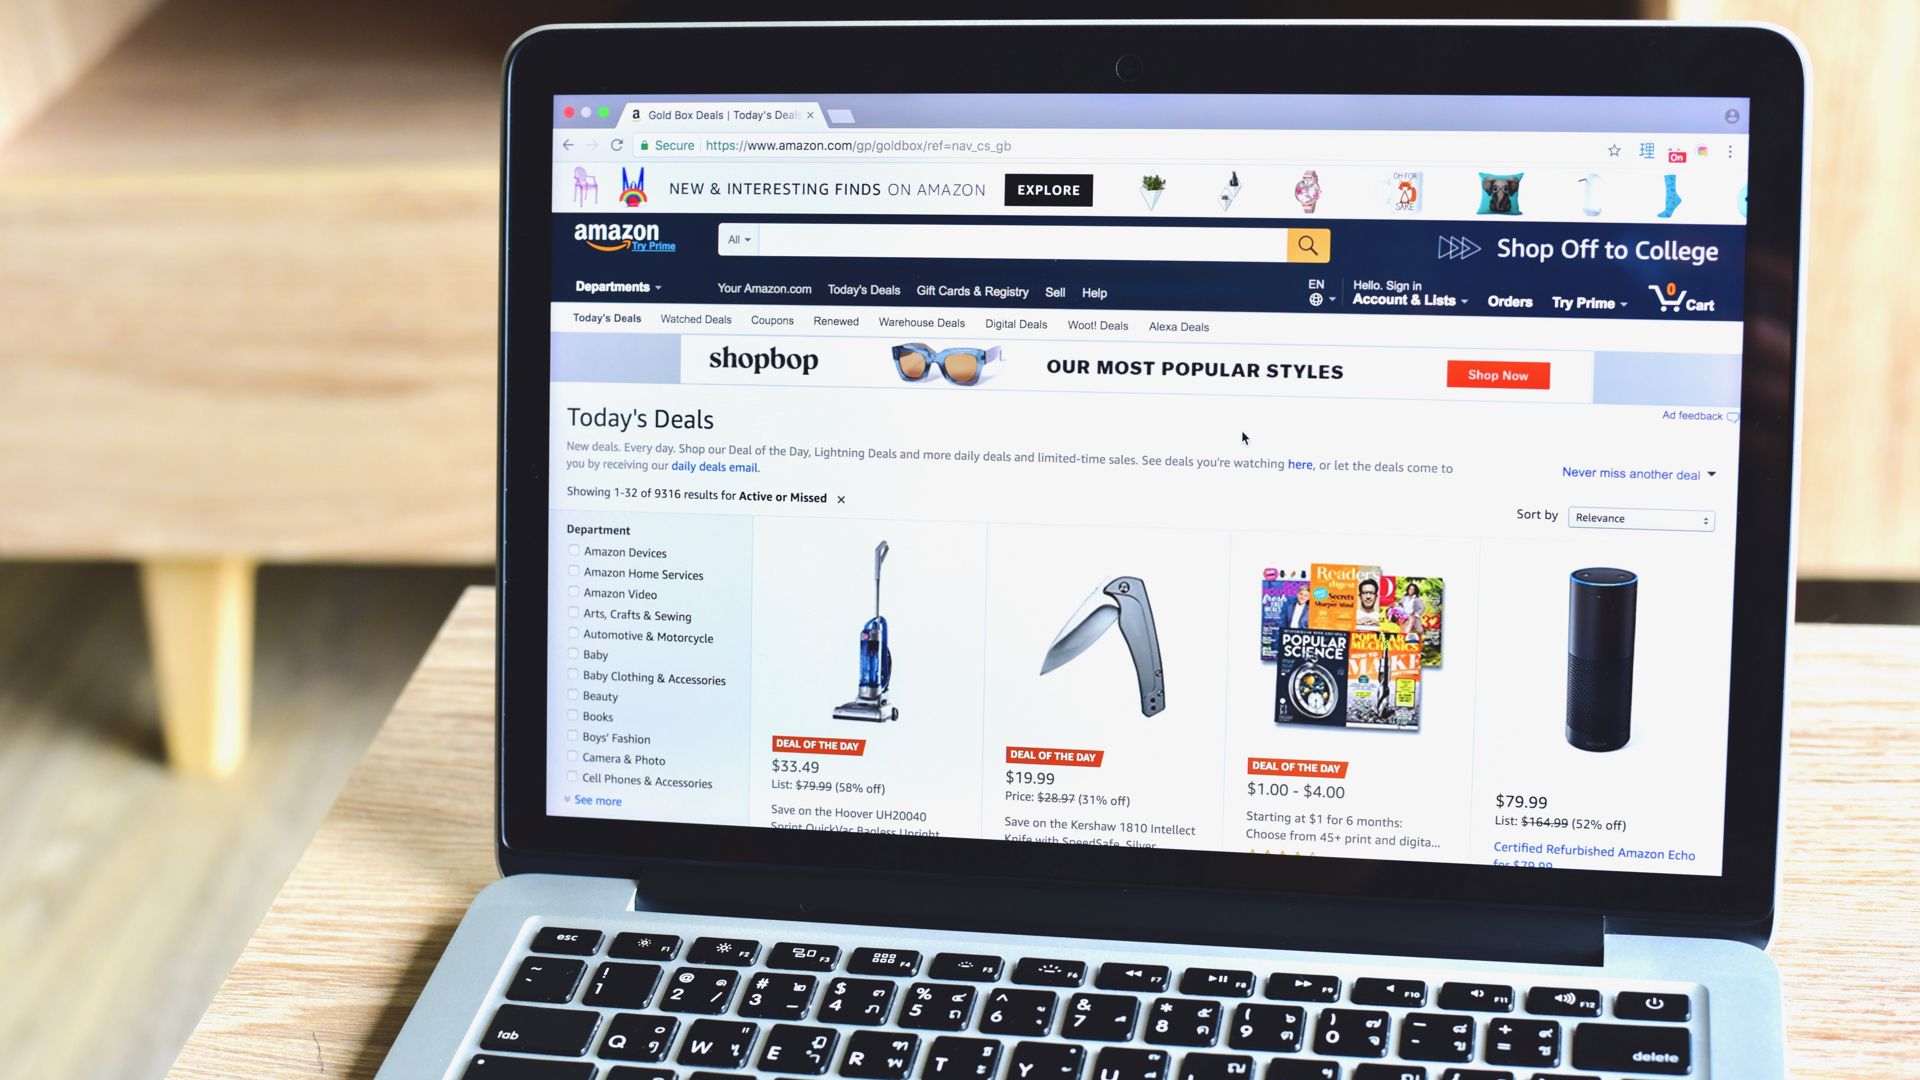 Laptop showing Amazon marketplace